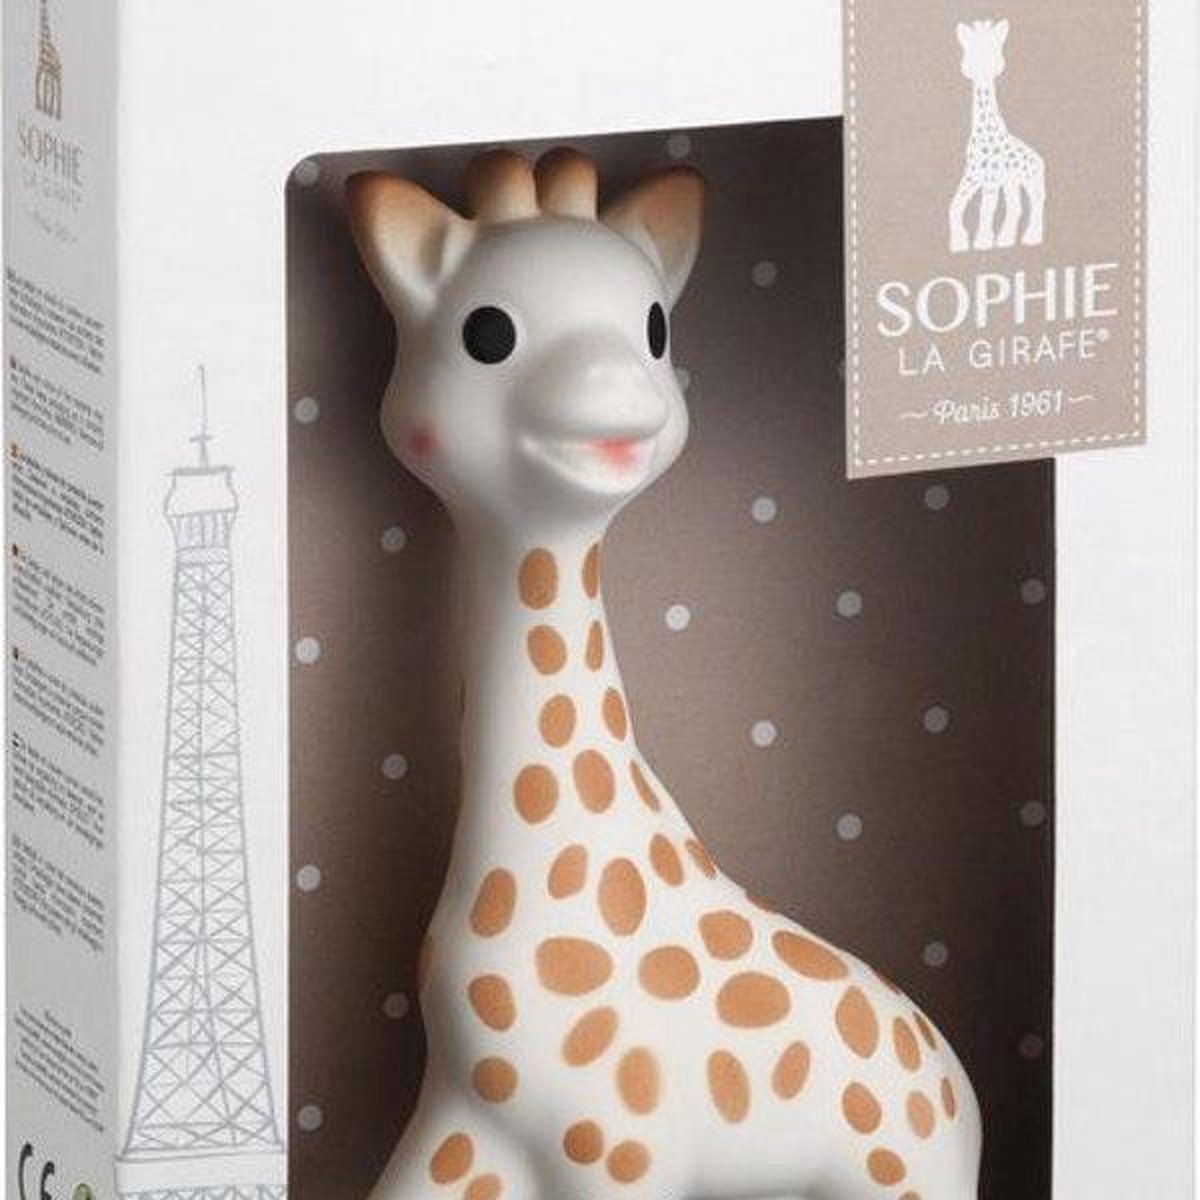 Sophie la Girafe - Jouet bébé en coffret cadeau | bol.com